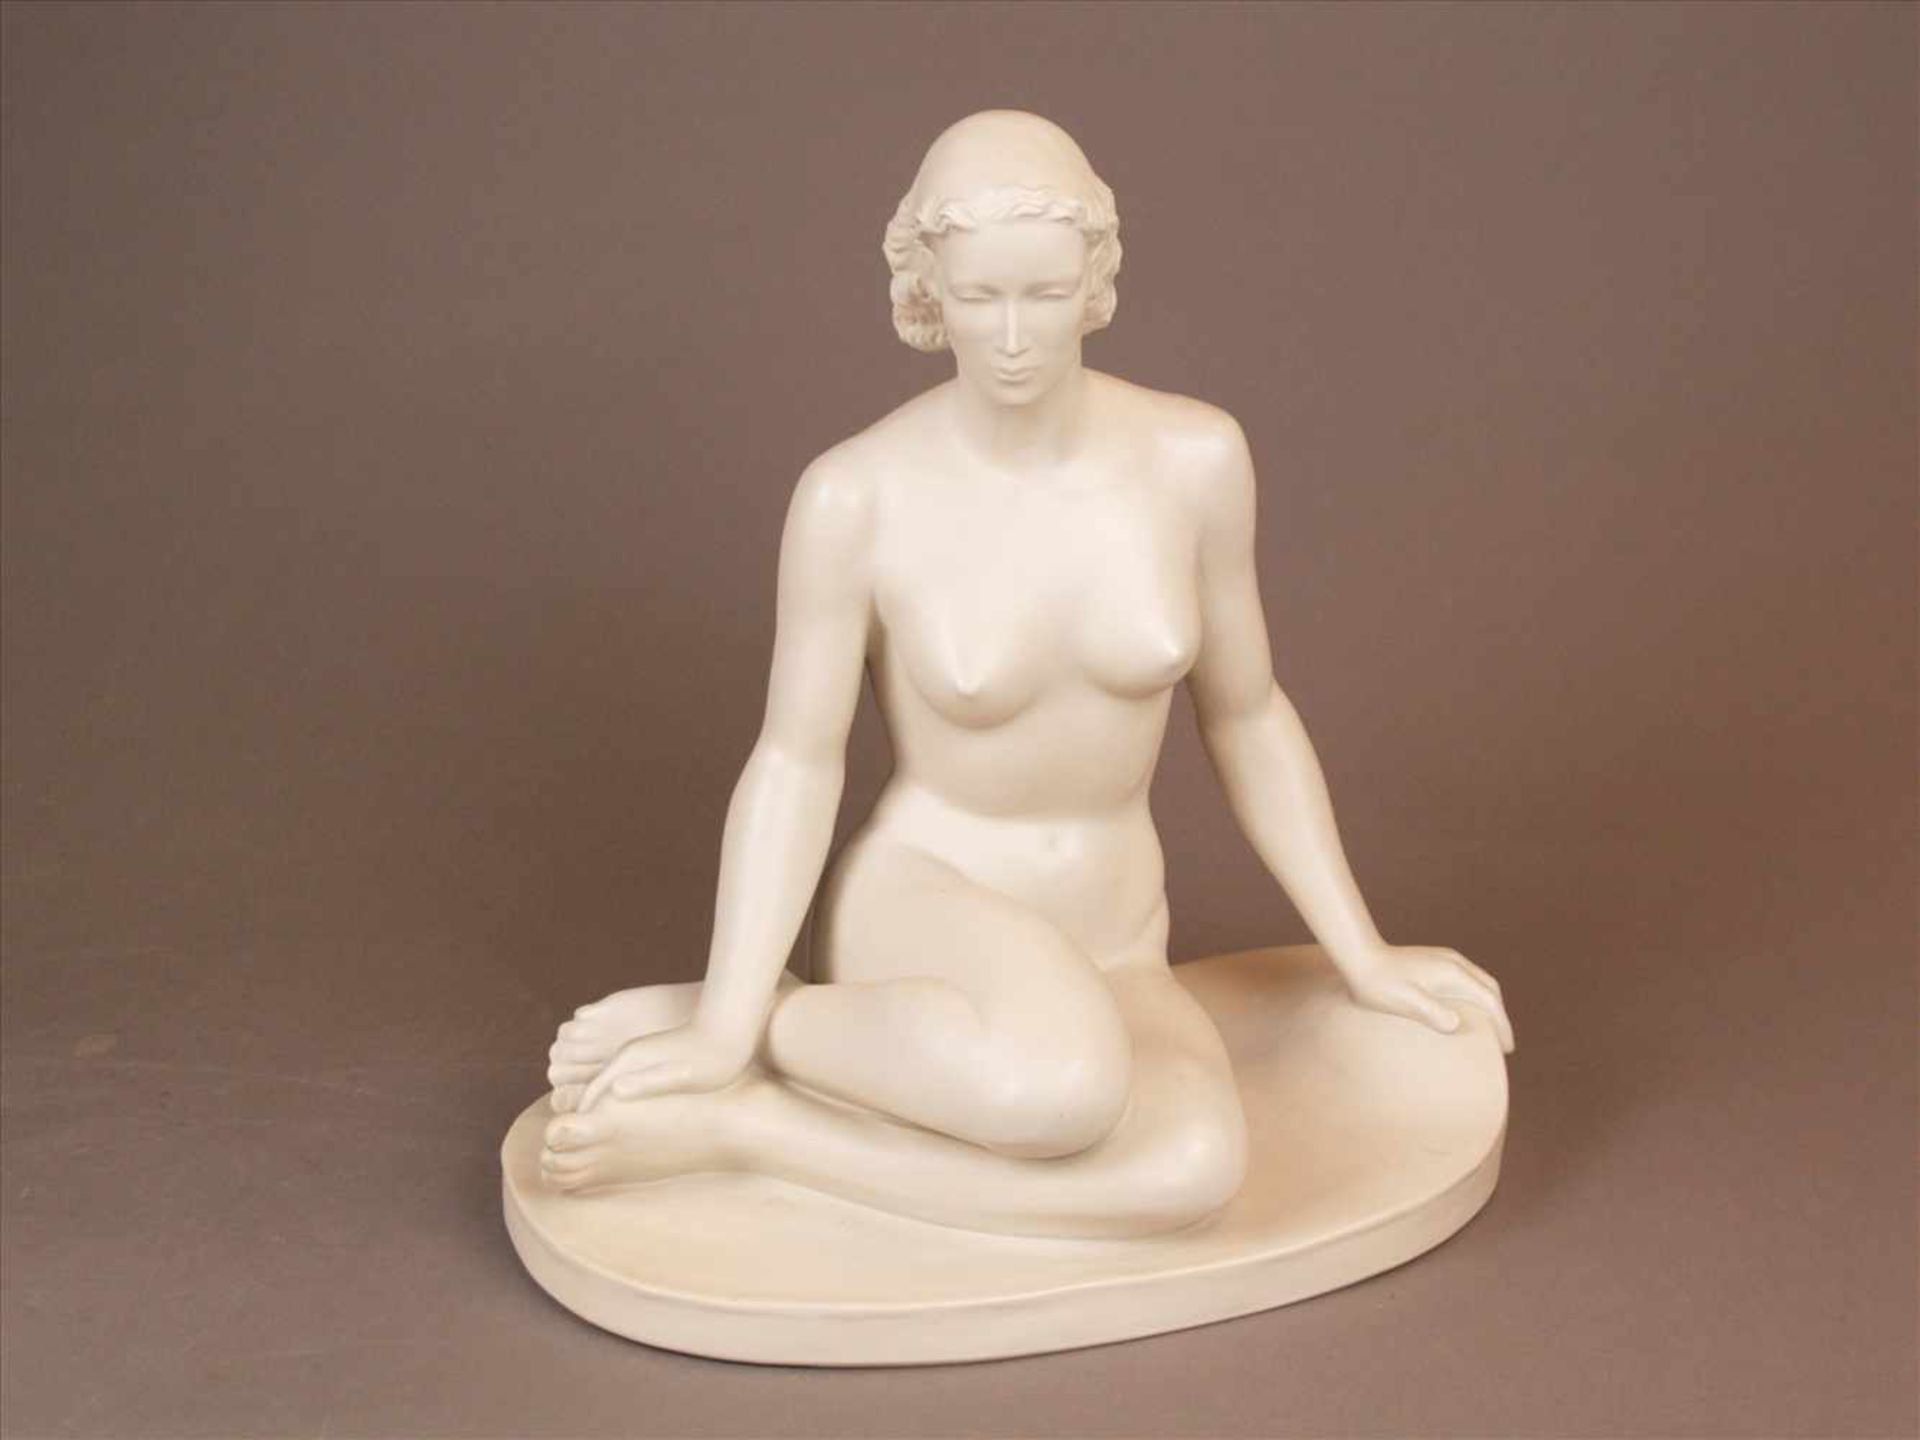 Porzellanfigur "Sitzende"- Rosenthal, Kunstabteilung Selb, Mod.Nr.1740, weißes Bisquitporzellan,